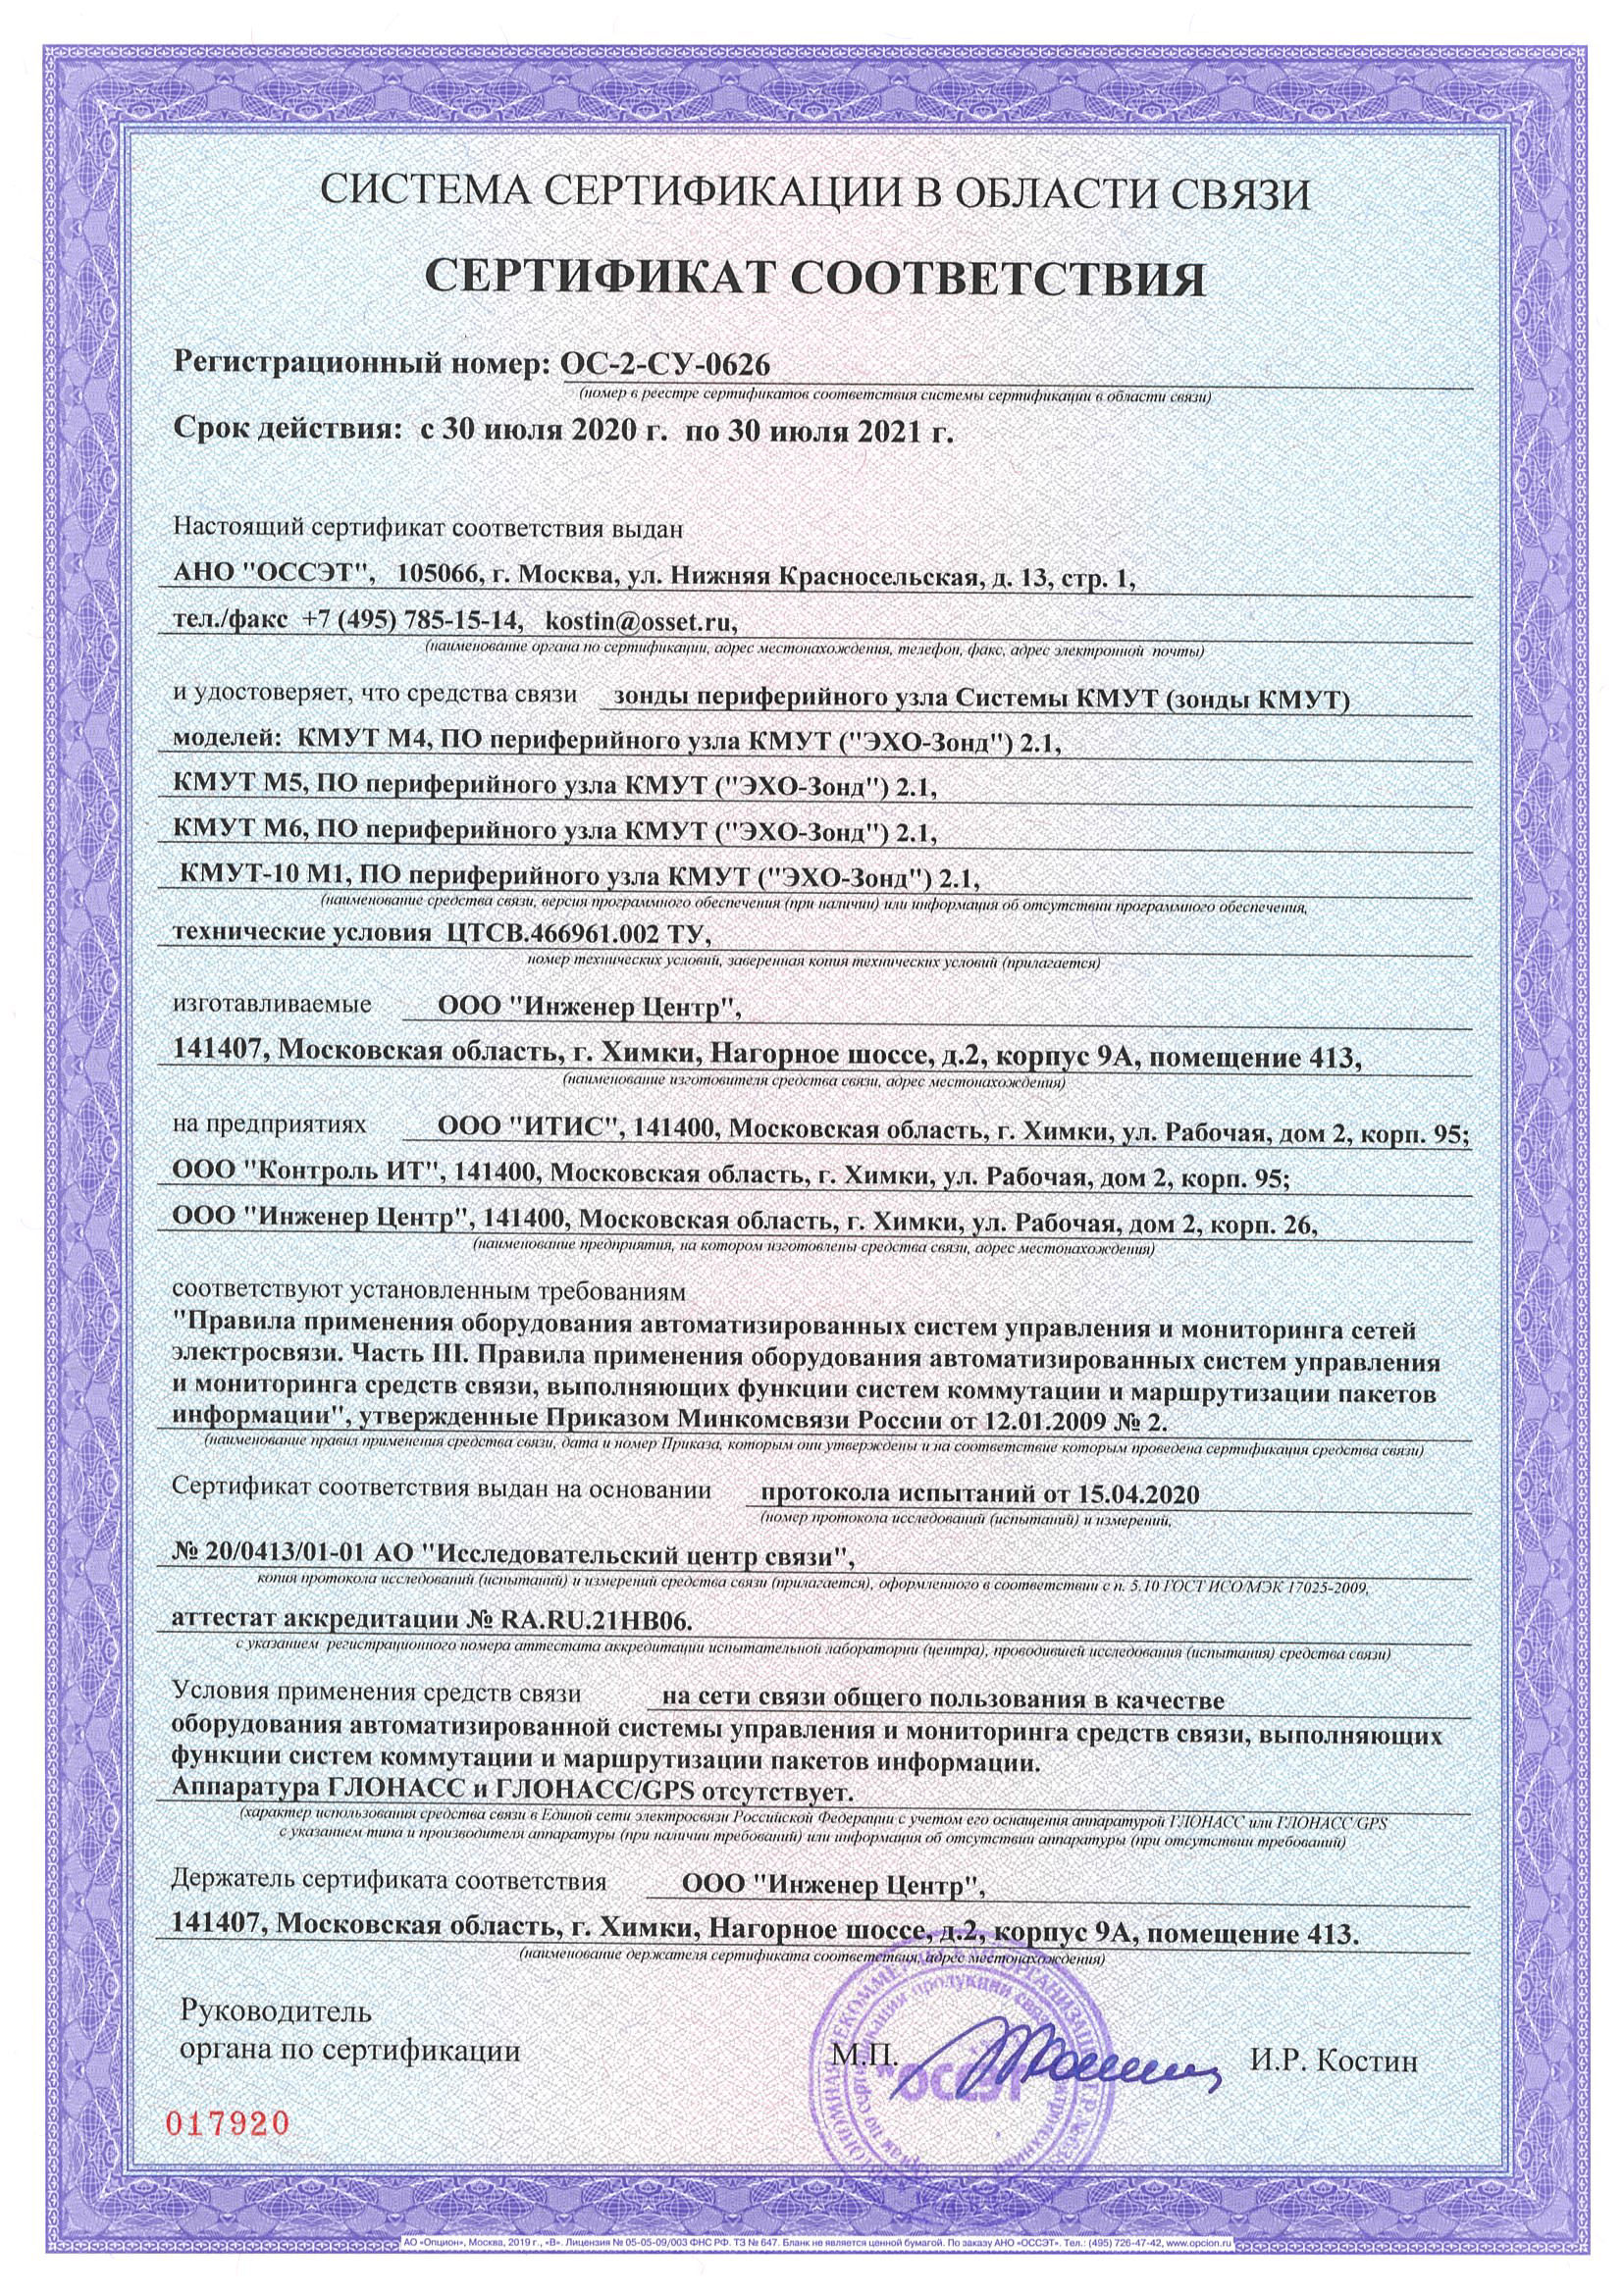 Сертификат за регистрационным номером ОС-2-СУ-0626